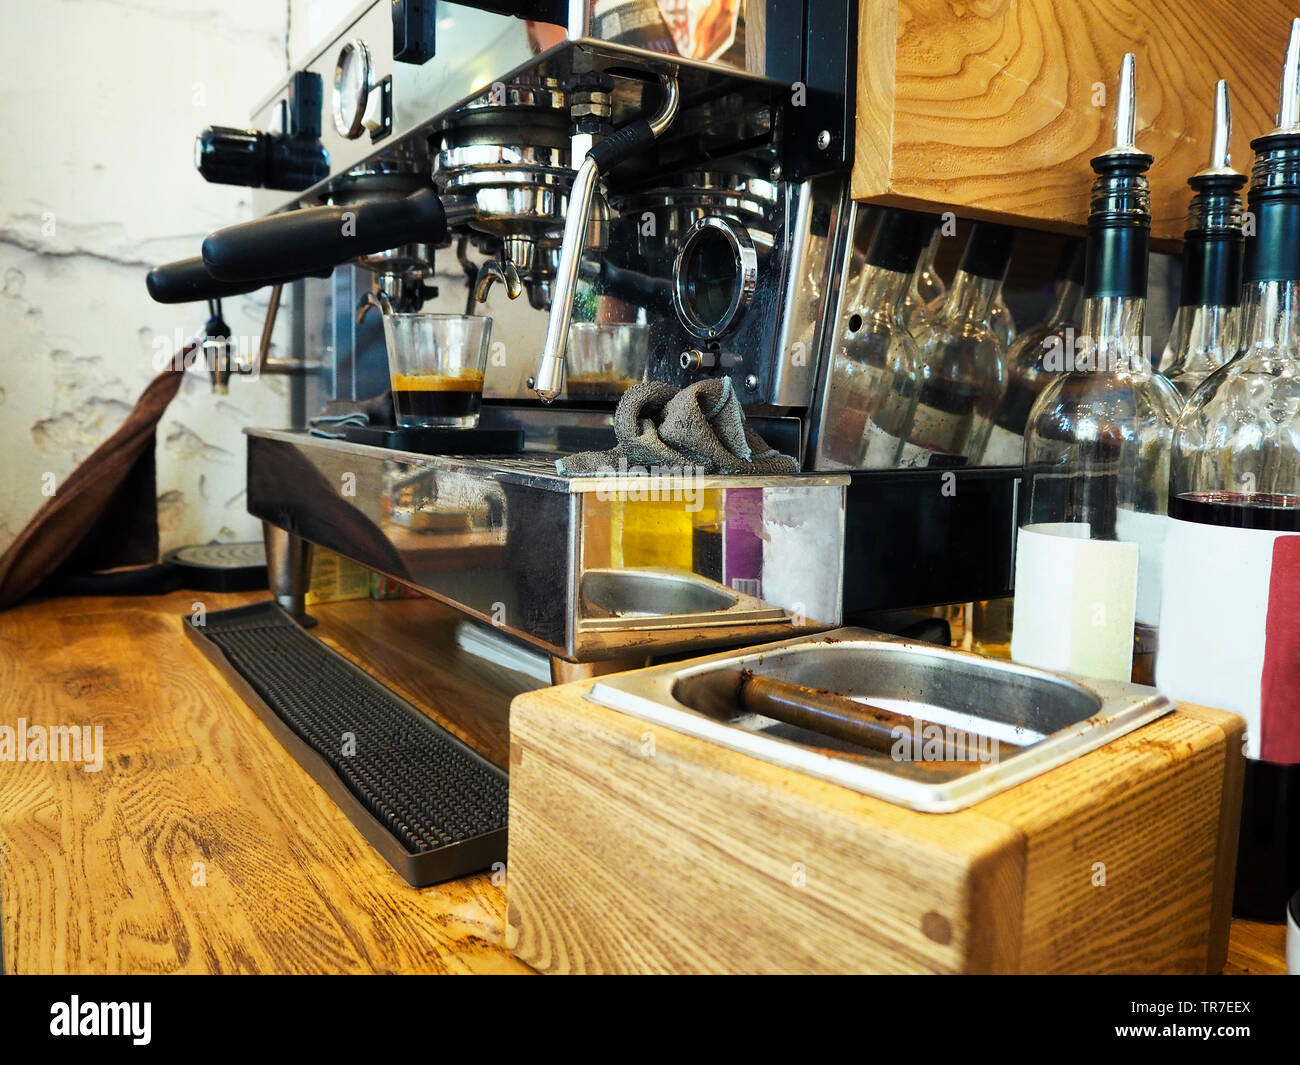 Cafetera exprés haciendo café en pub, bar, restaurante: fotografía